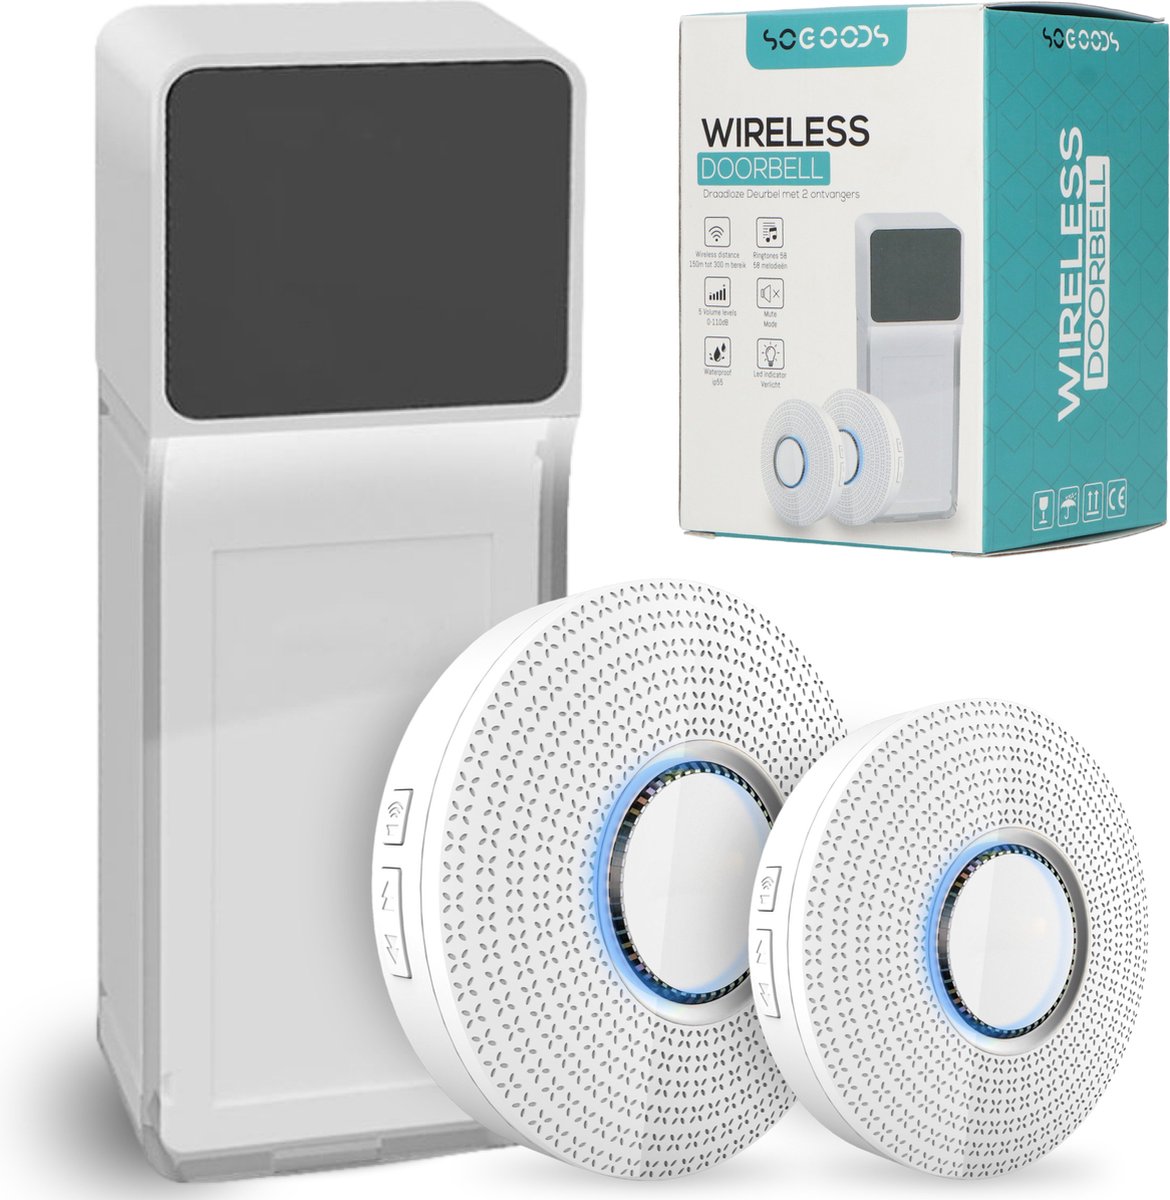 Draadloze Deurbel met 2 Ontvangers - Wireless Doorbell - Draadloos - Waterdicht - Op Batterijen - Deur Bel